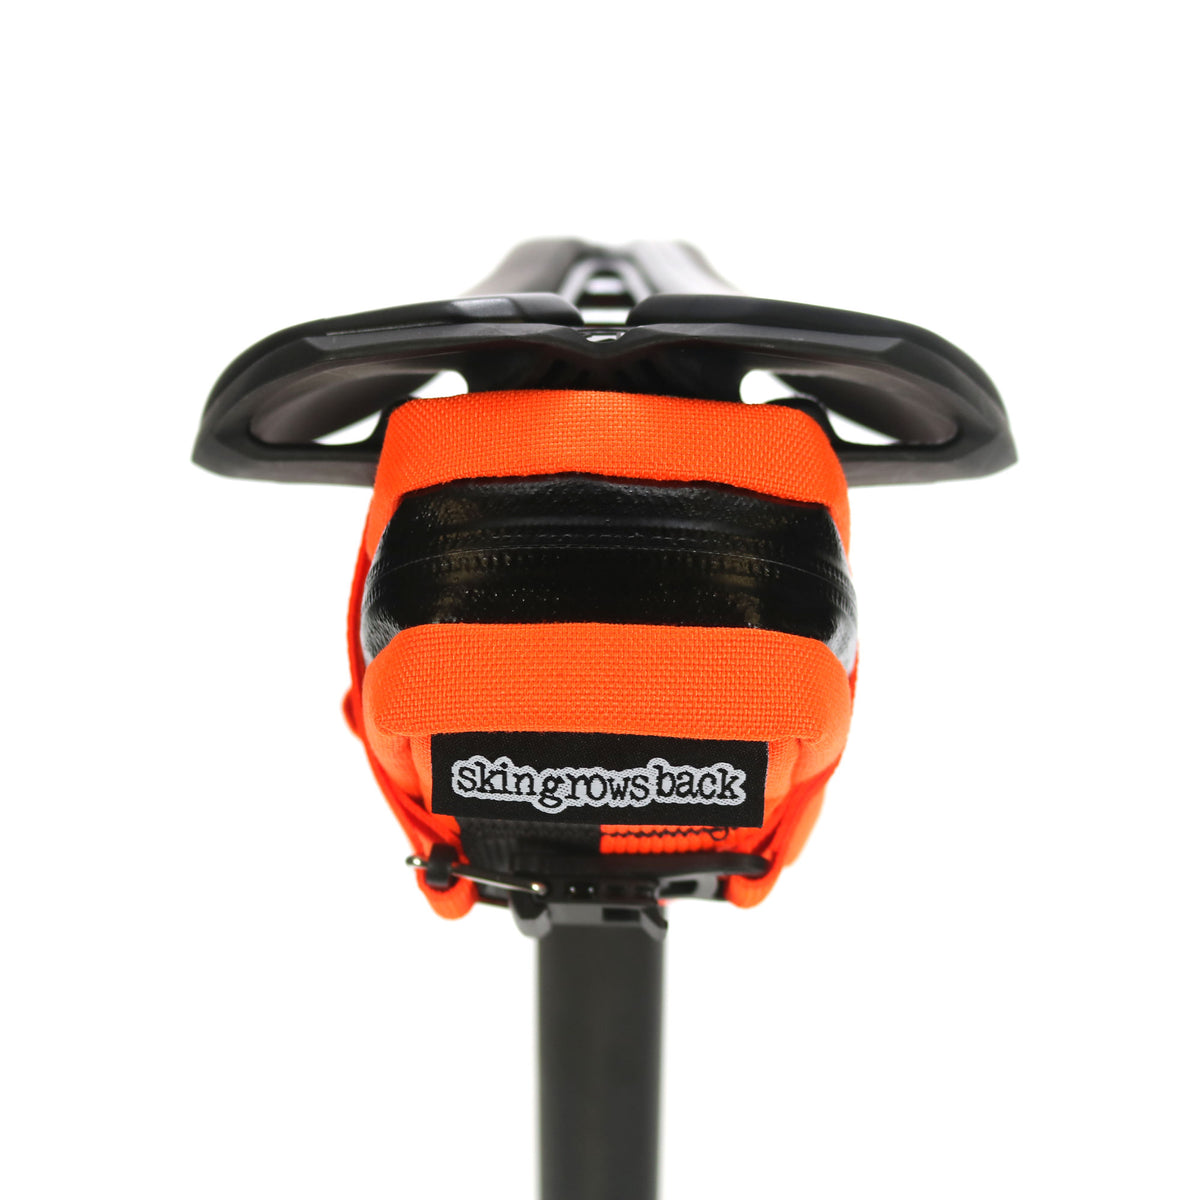 skingrowsback plan b cycling saddle bag neon orange strap